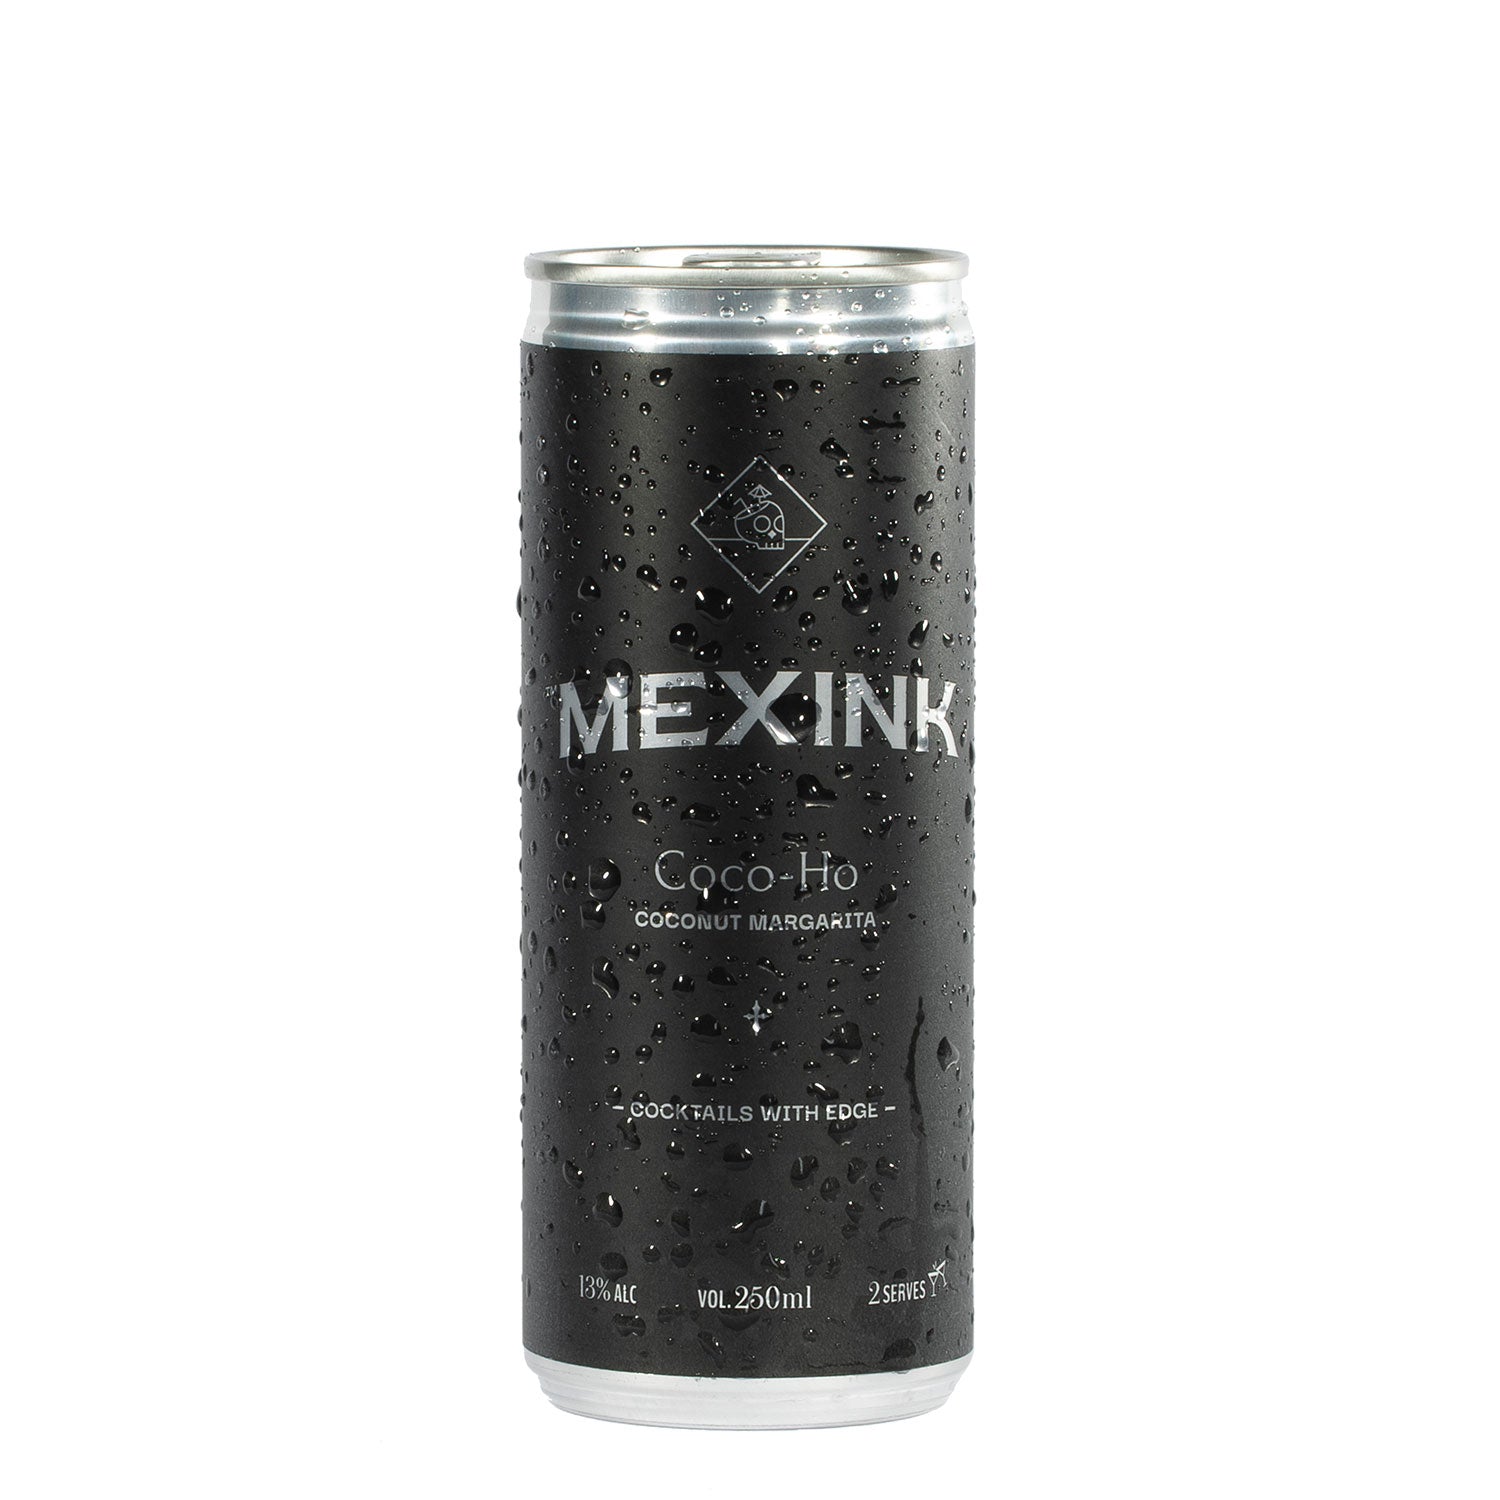 Mexink Coco-Ho Coconut Margarita 250mL